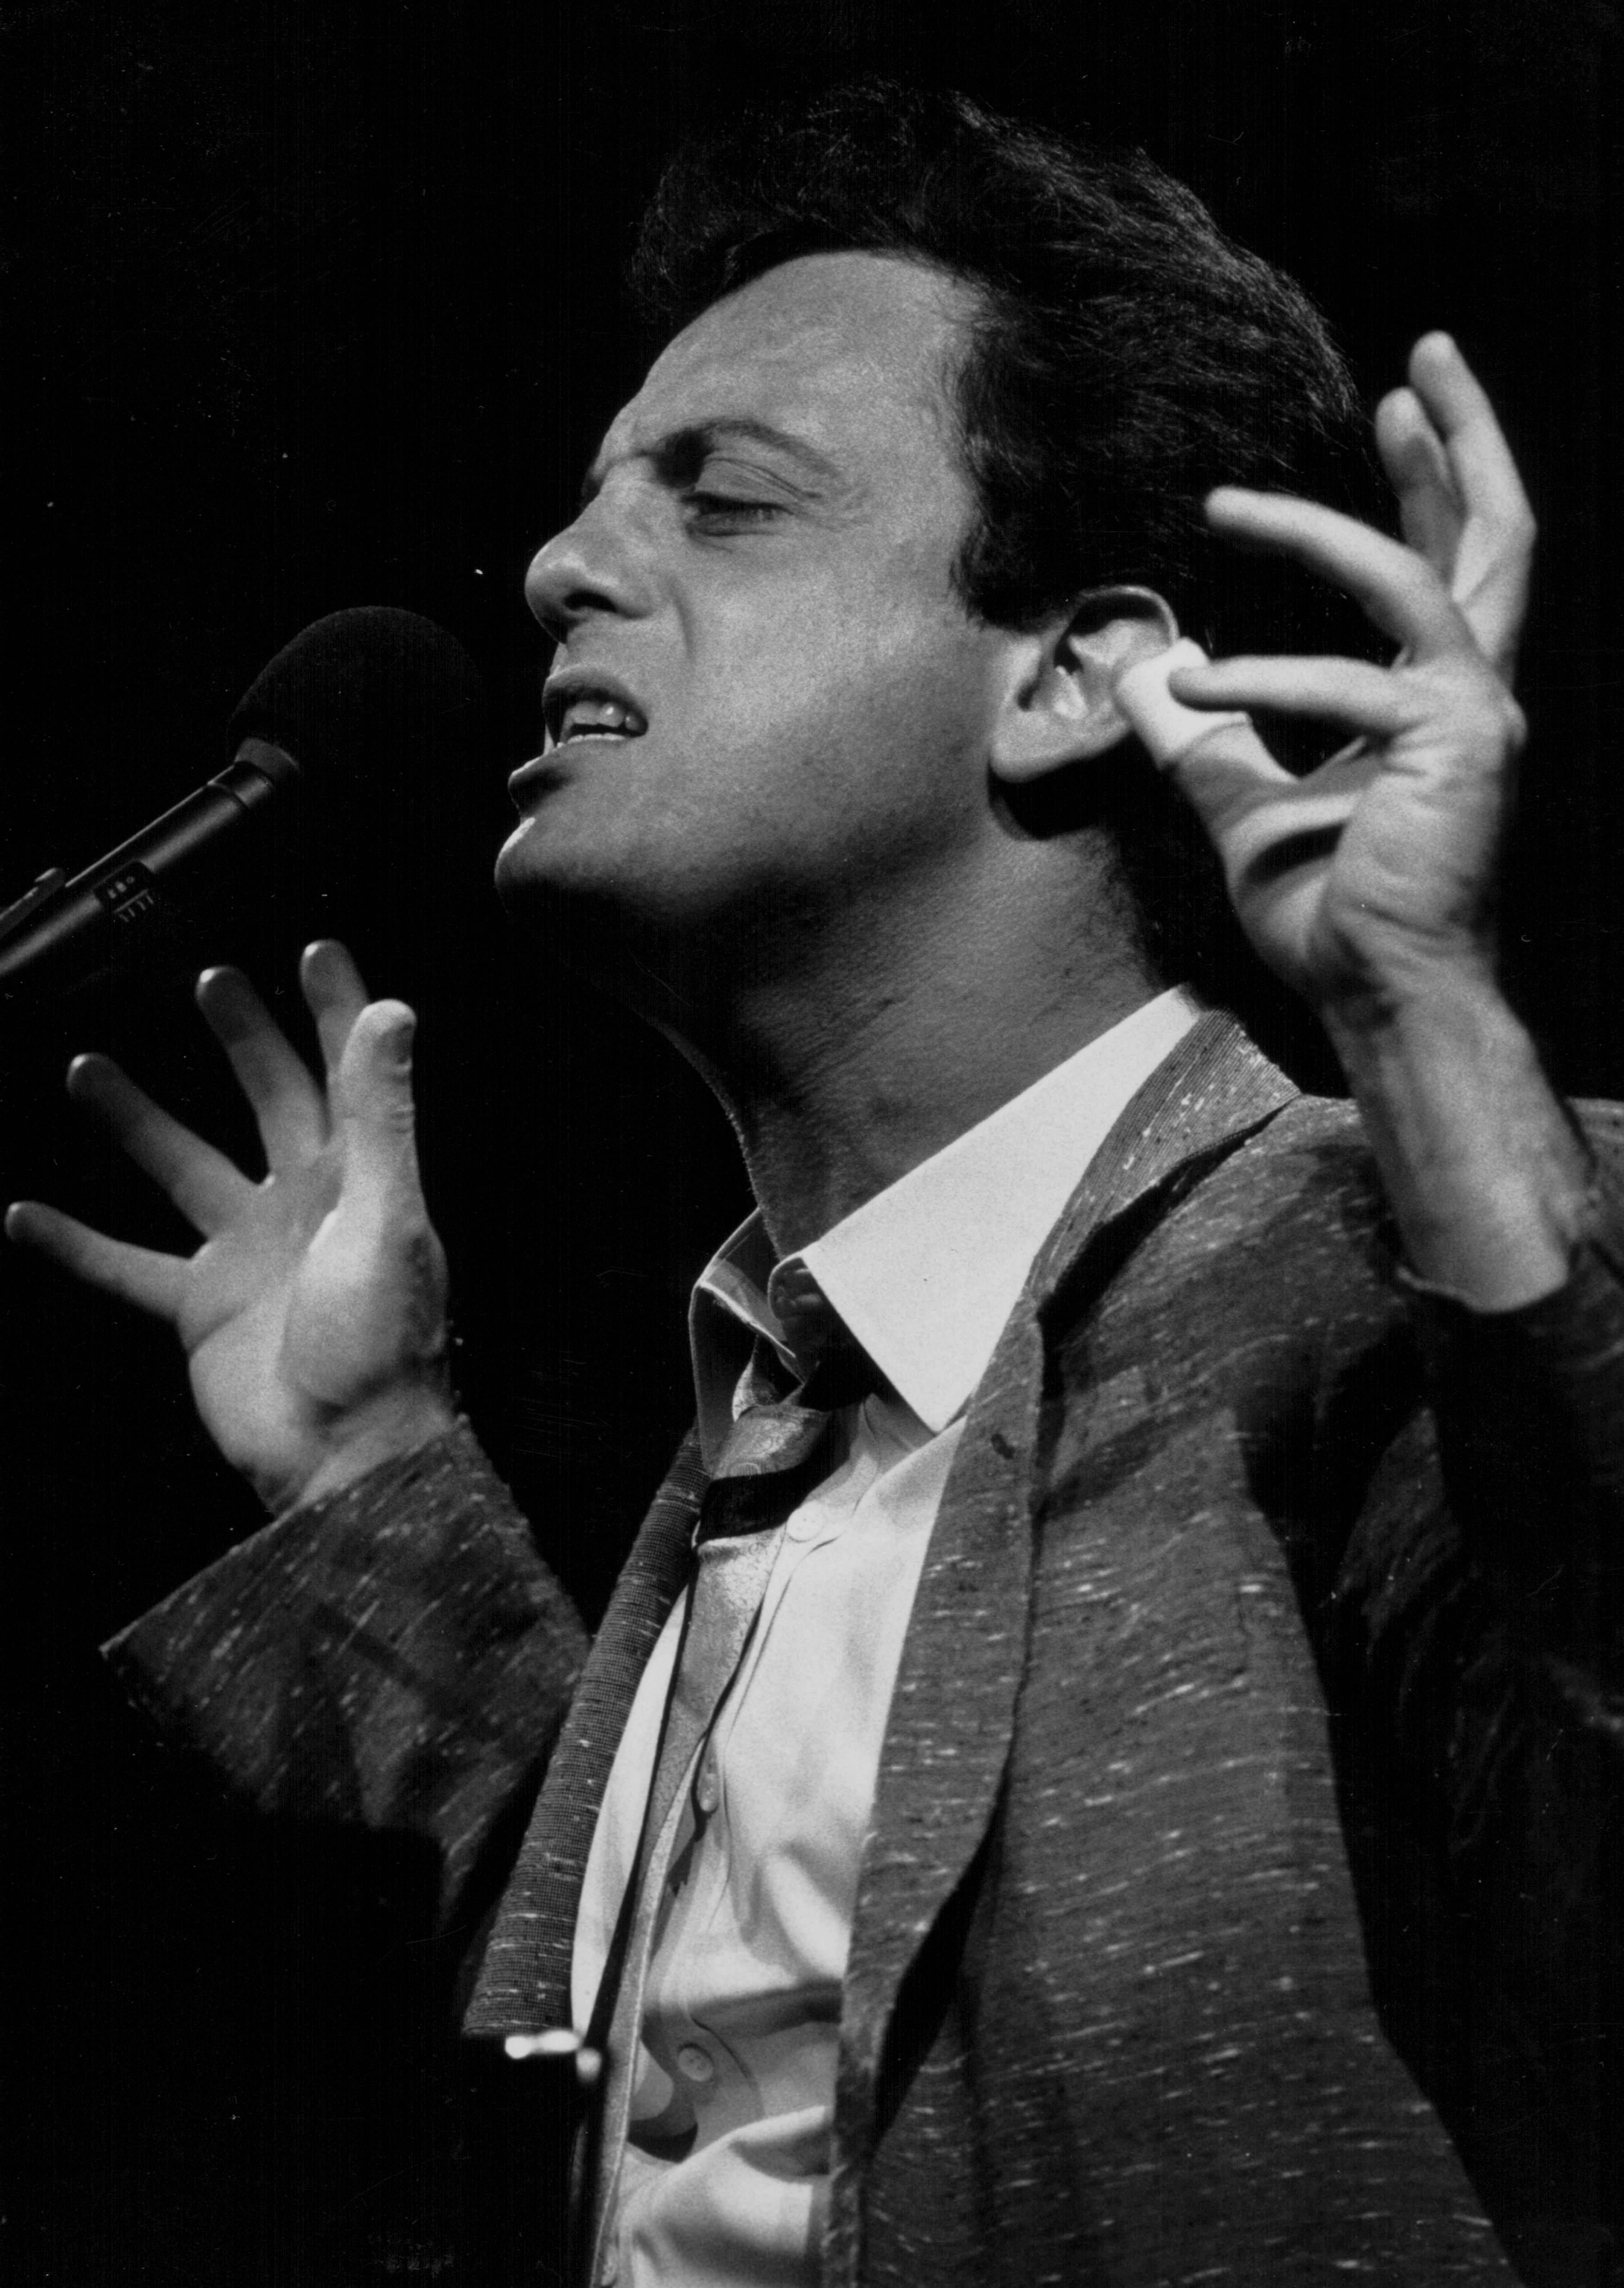 Billy Joel auf der Bühne, ca. 1980-1990 | Quelle: Getty Images